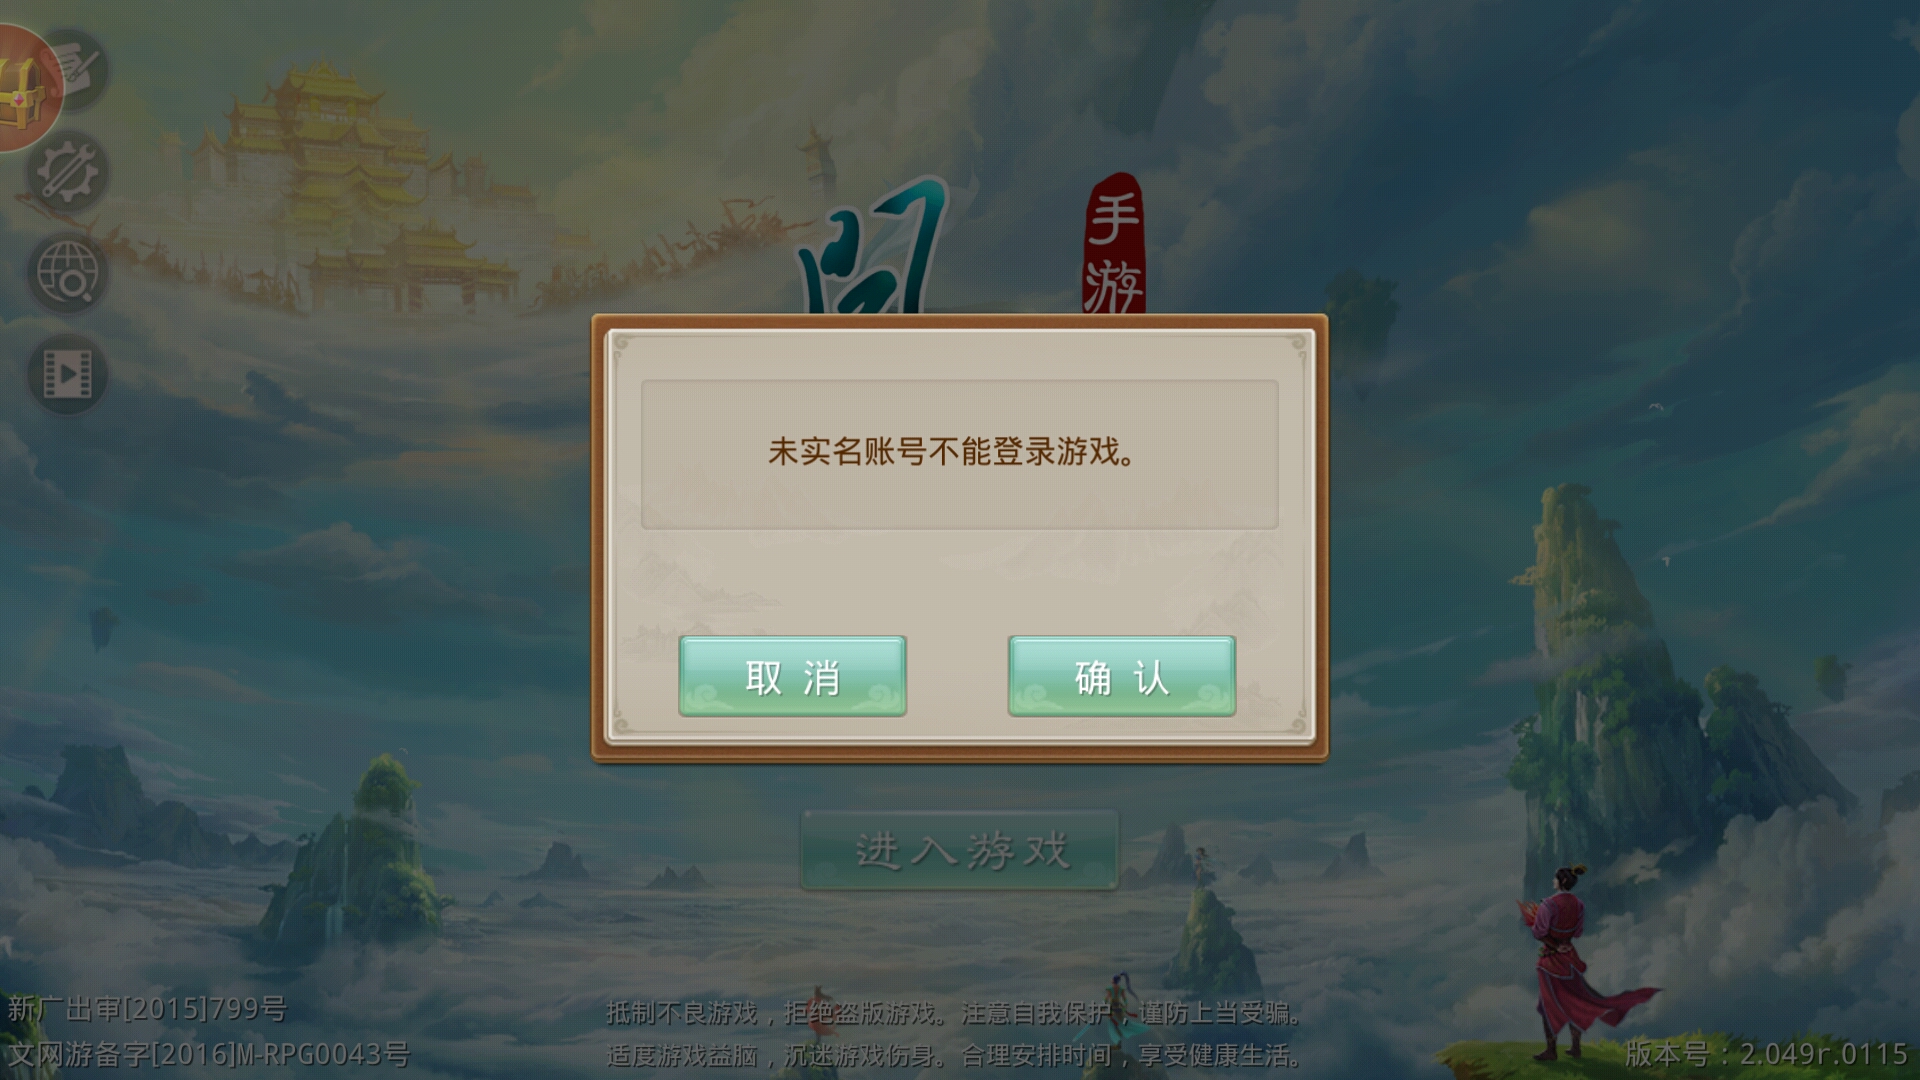 登陆游戏界面提示未实名认证用户无法登陆